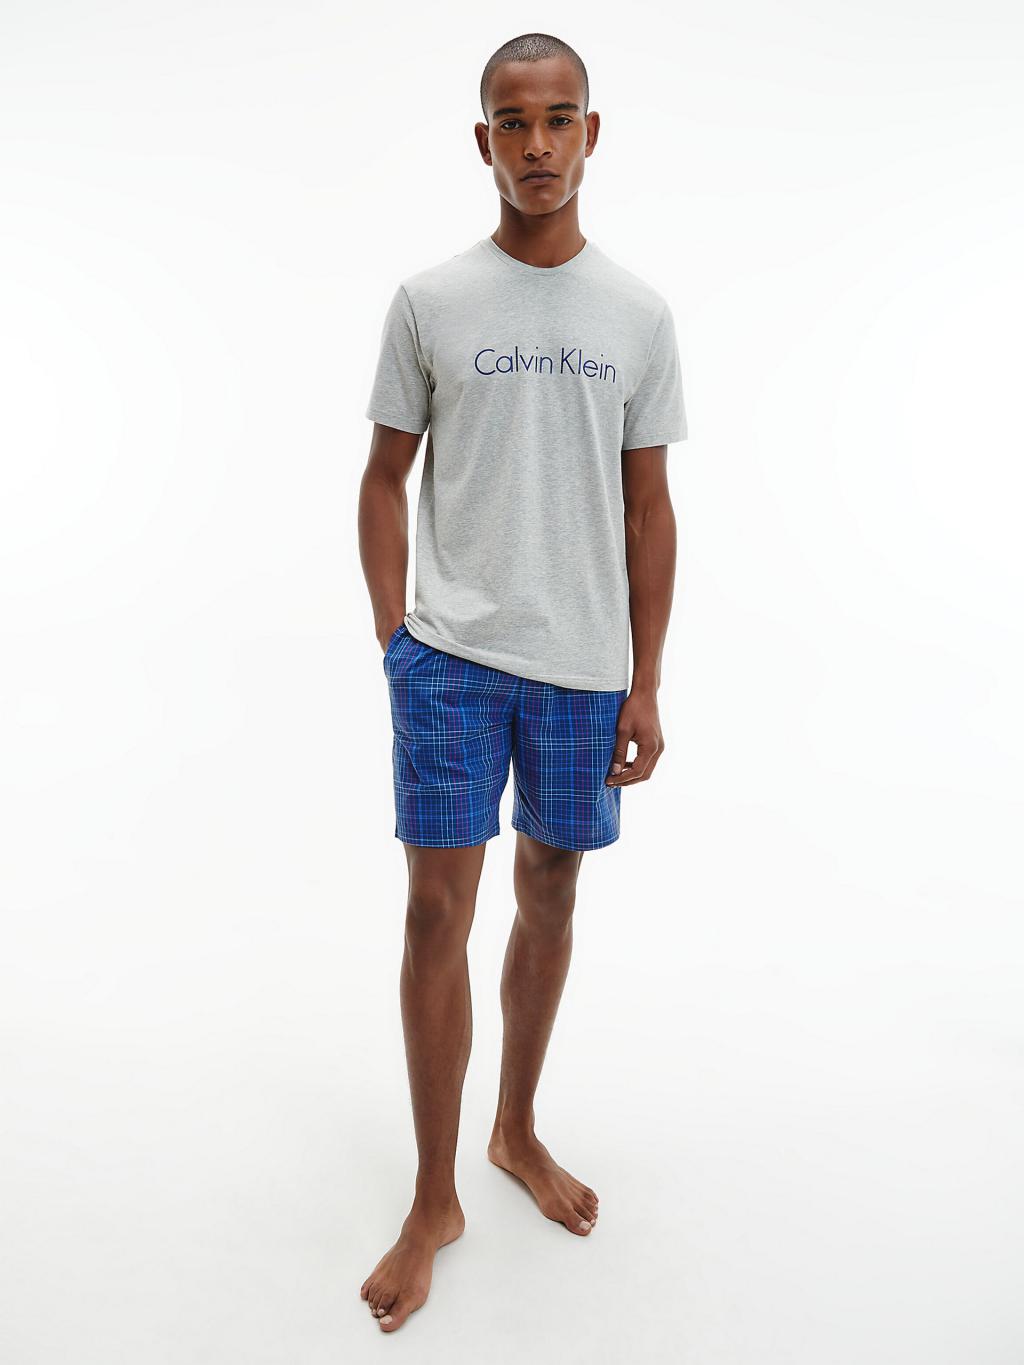 NM1746 - pánský set Calvin Klein krátký